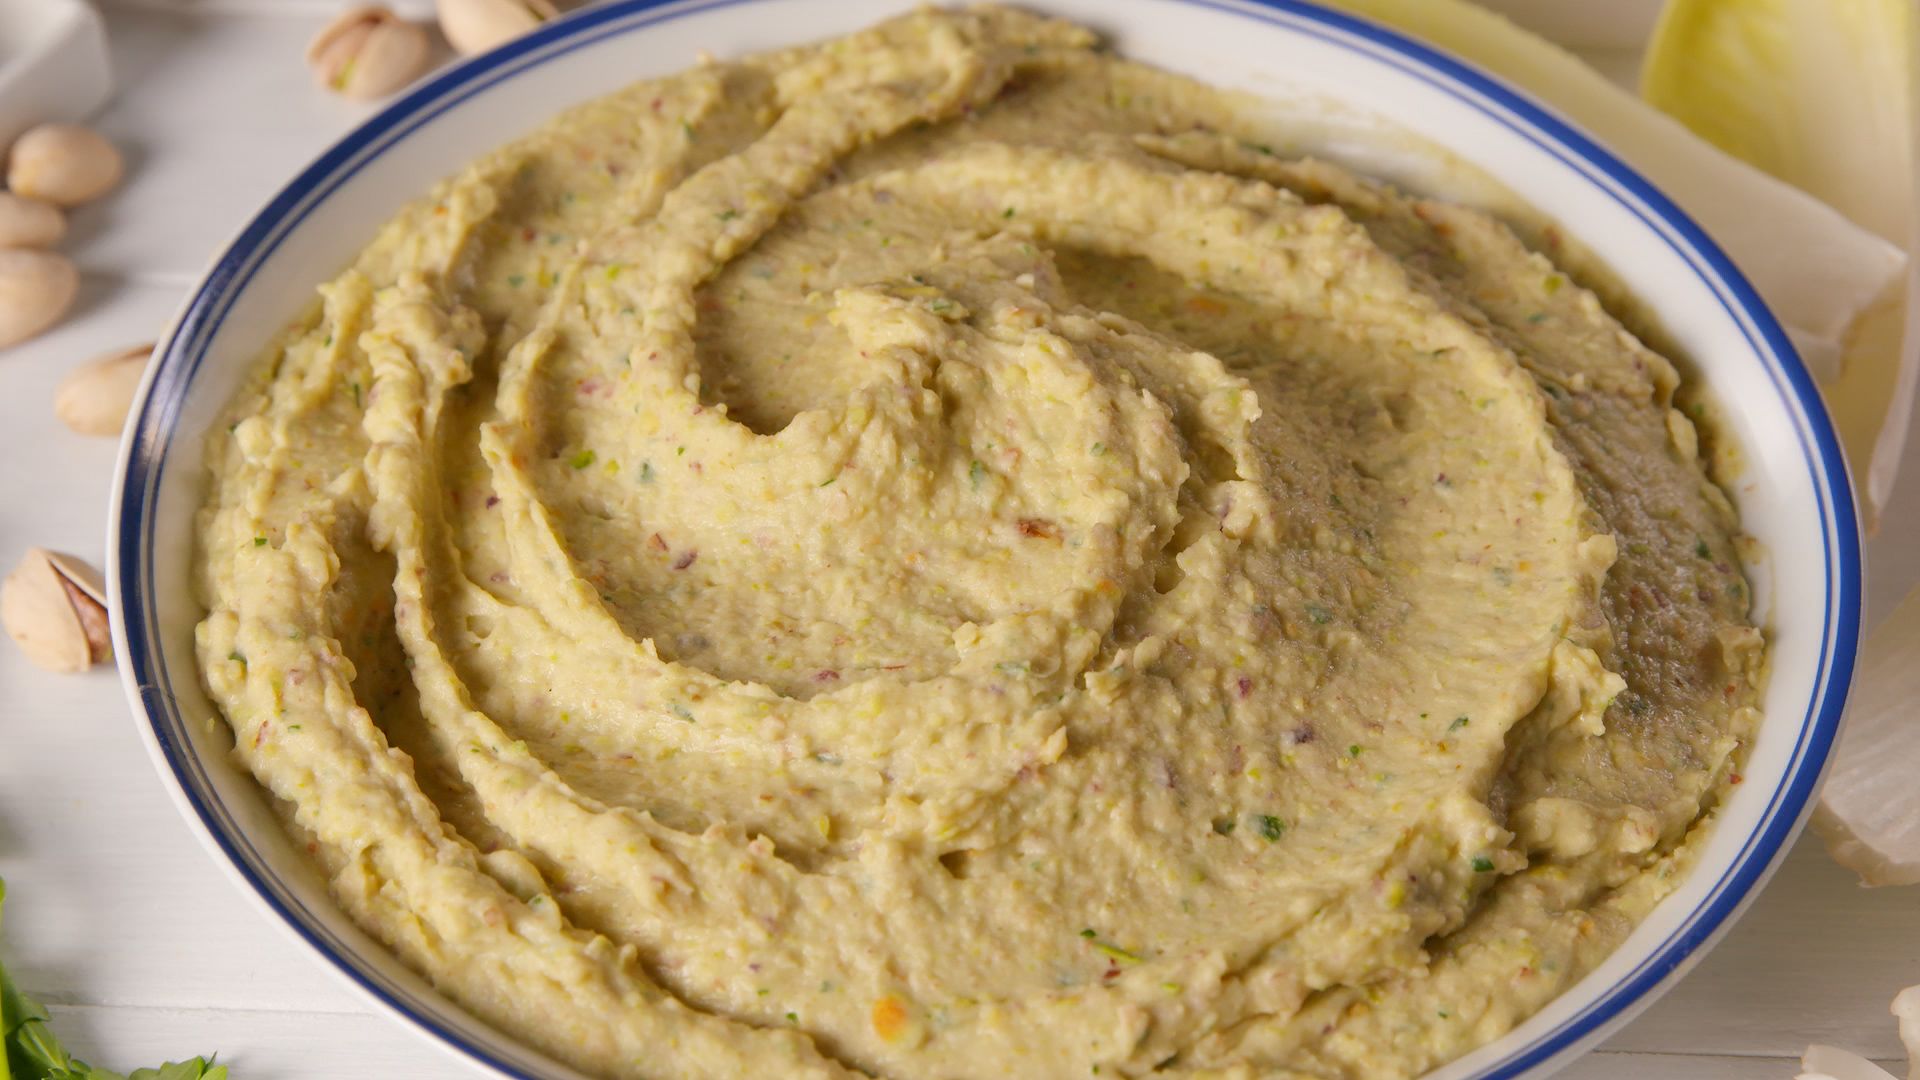 Lauren Conrad Vs. Kristin Cavallari: Whose Hummus Is Better? 